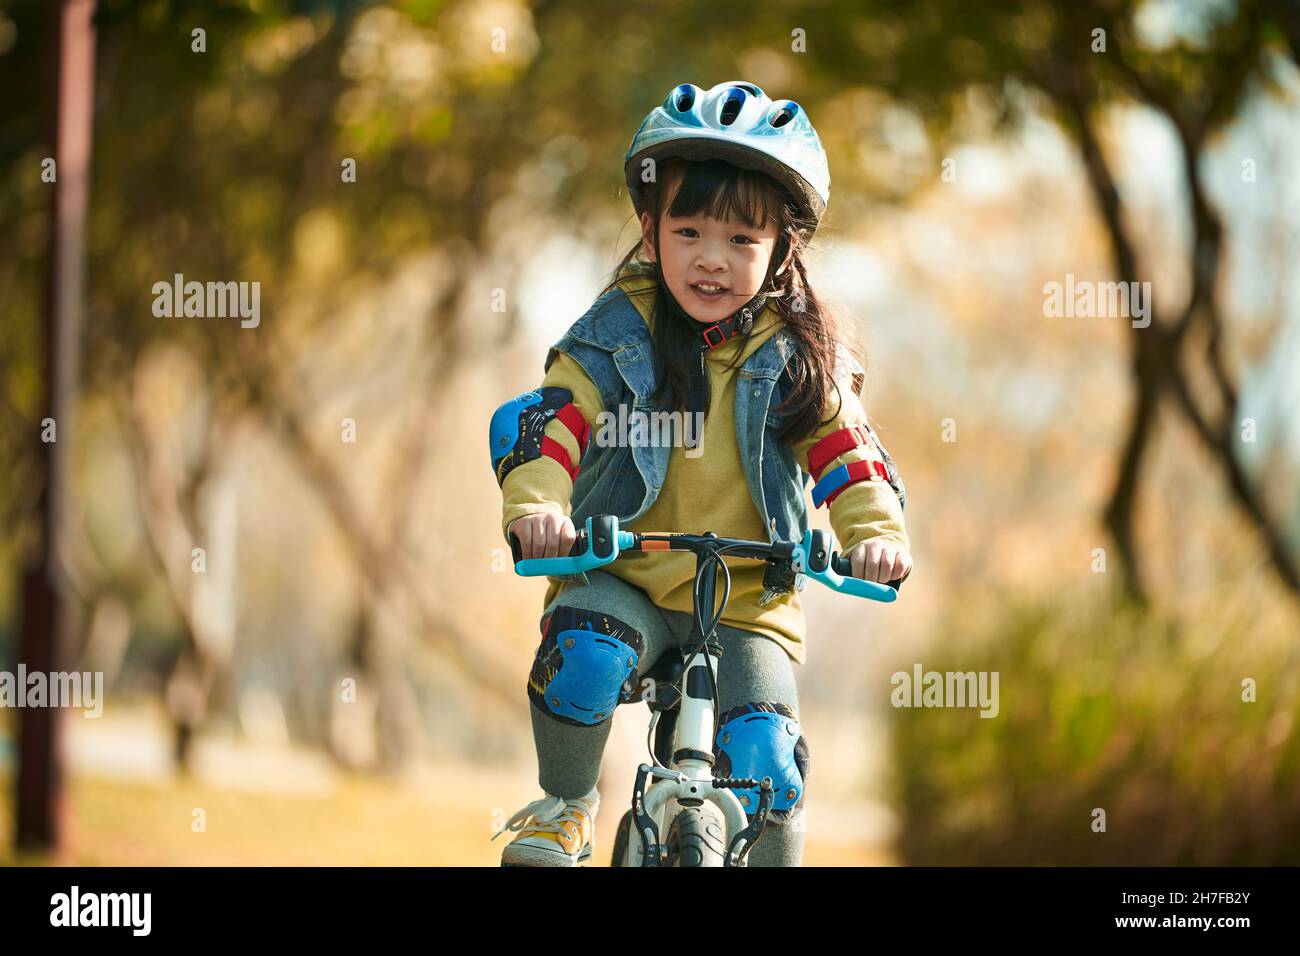 jolie petite fille asiatique heureuse avec casque et équipement de protection complet à vélo dans le parc de la ville Banque D'Images